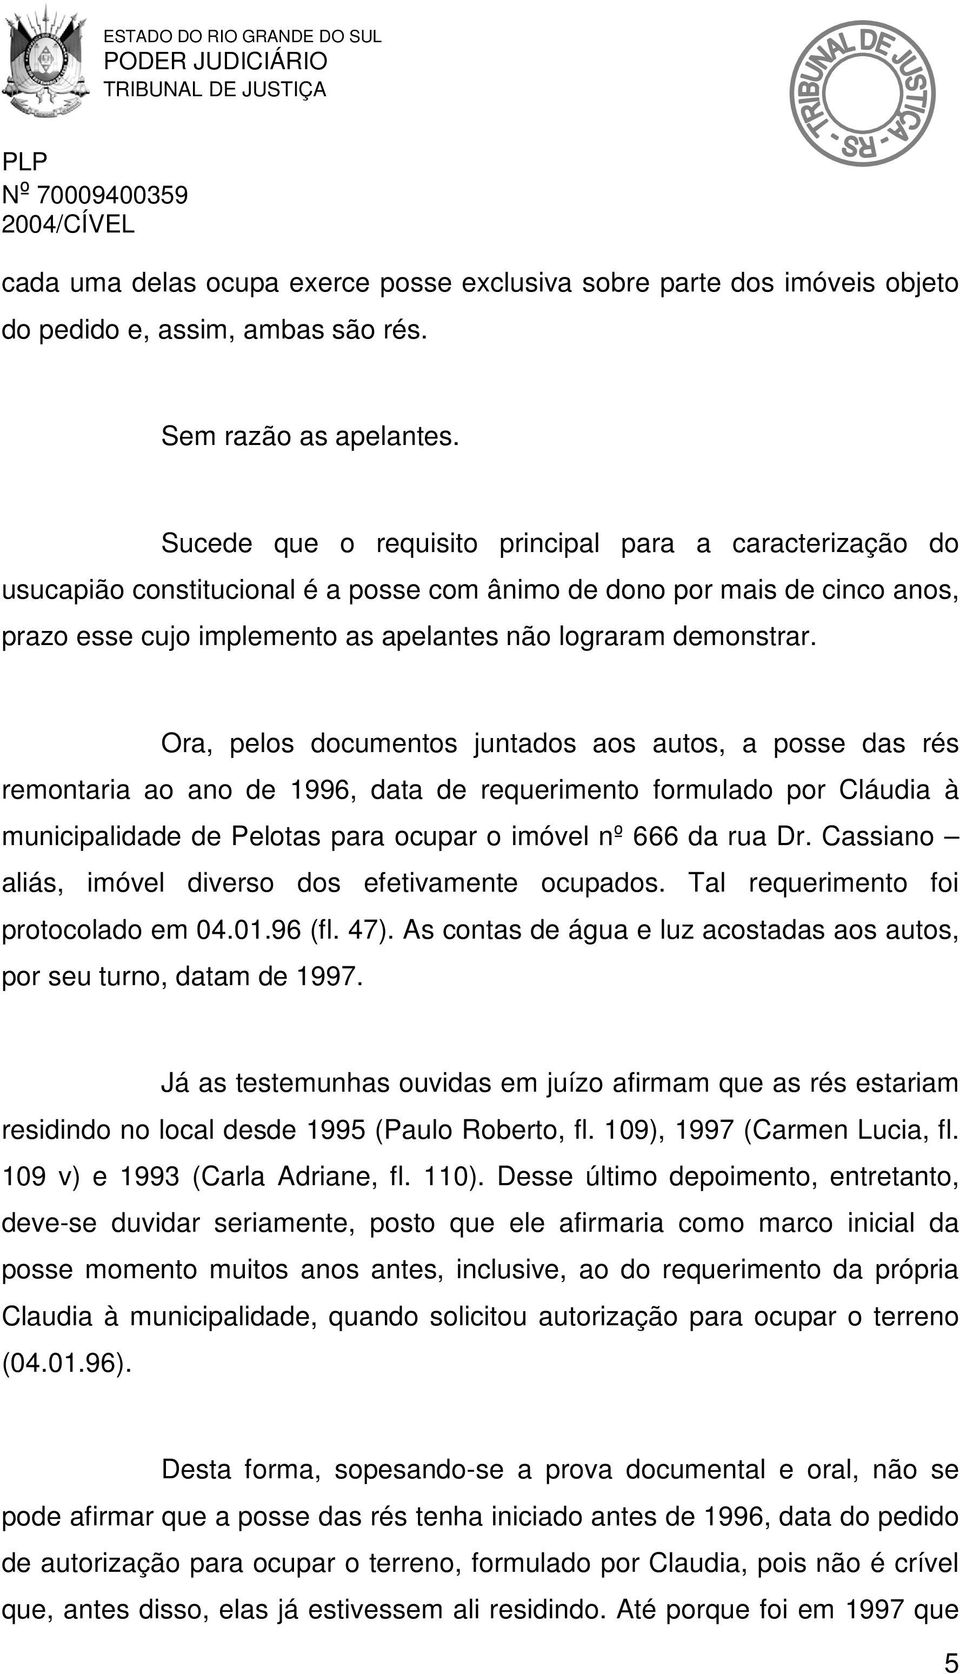 Ora, pelos documentos juntados aos autos, a posse das rés remontaria ao ano de 1996, data de requerimento formulado por Cláudia à municipalidade de Pelotas para ocupar o imóvel nº 666 da rua Dr.